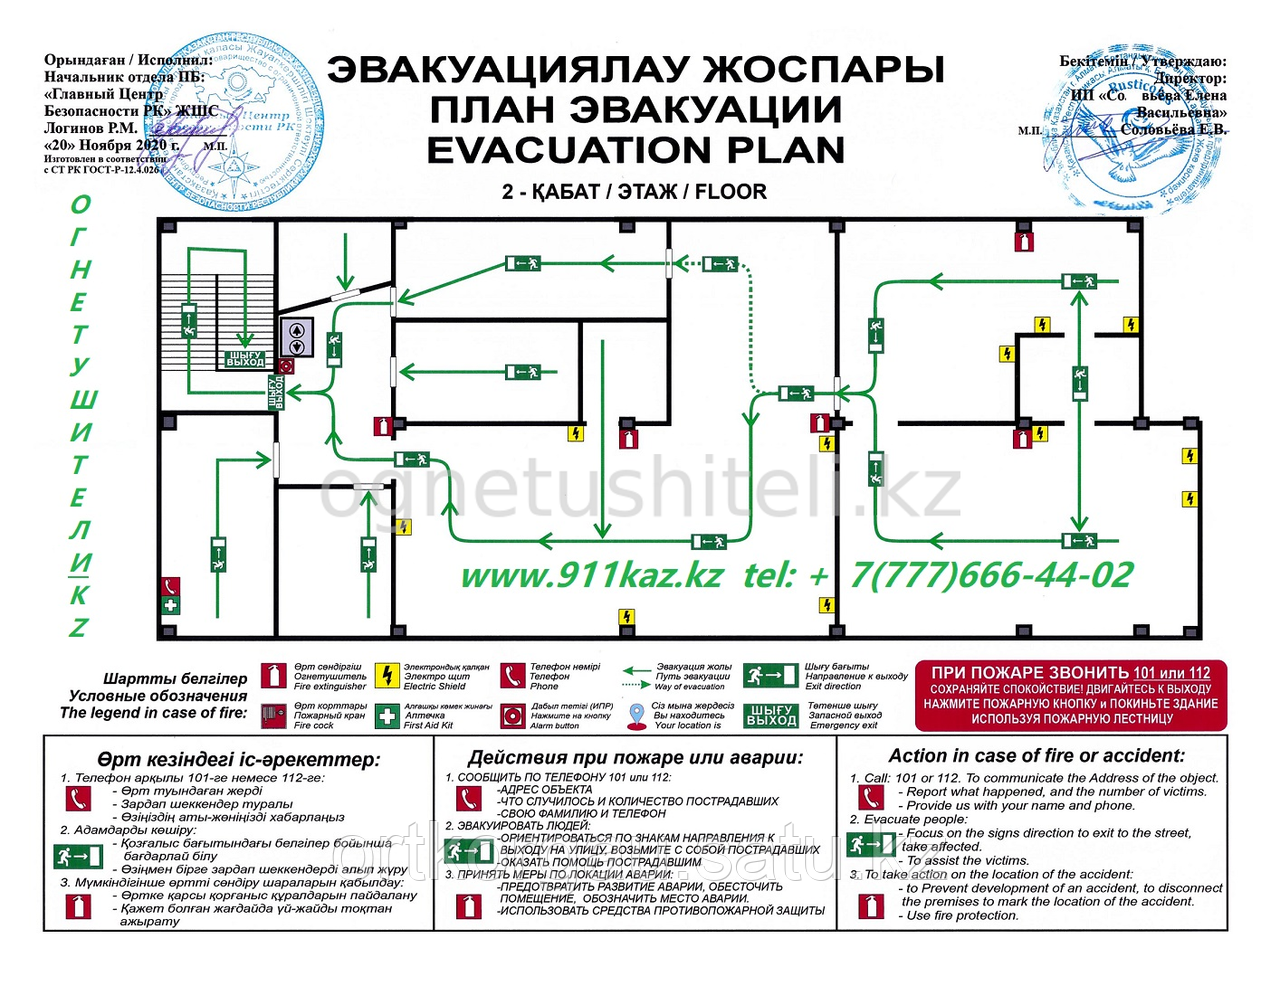 Разработка и изготовление плана эвакуации (формат А3).